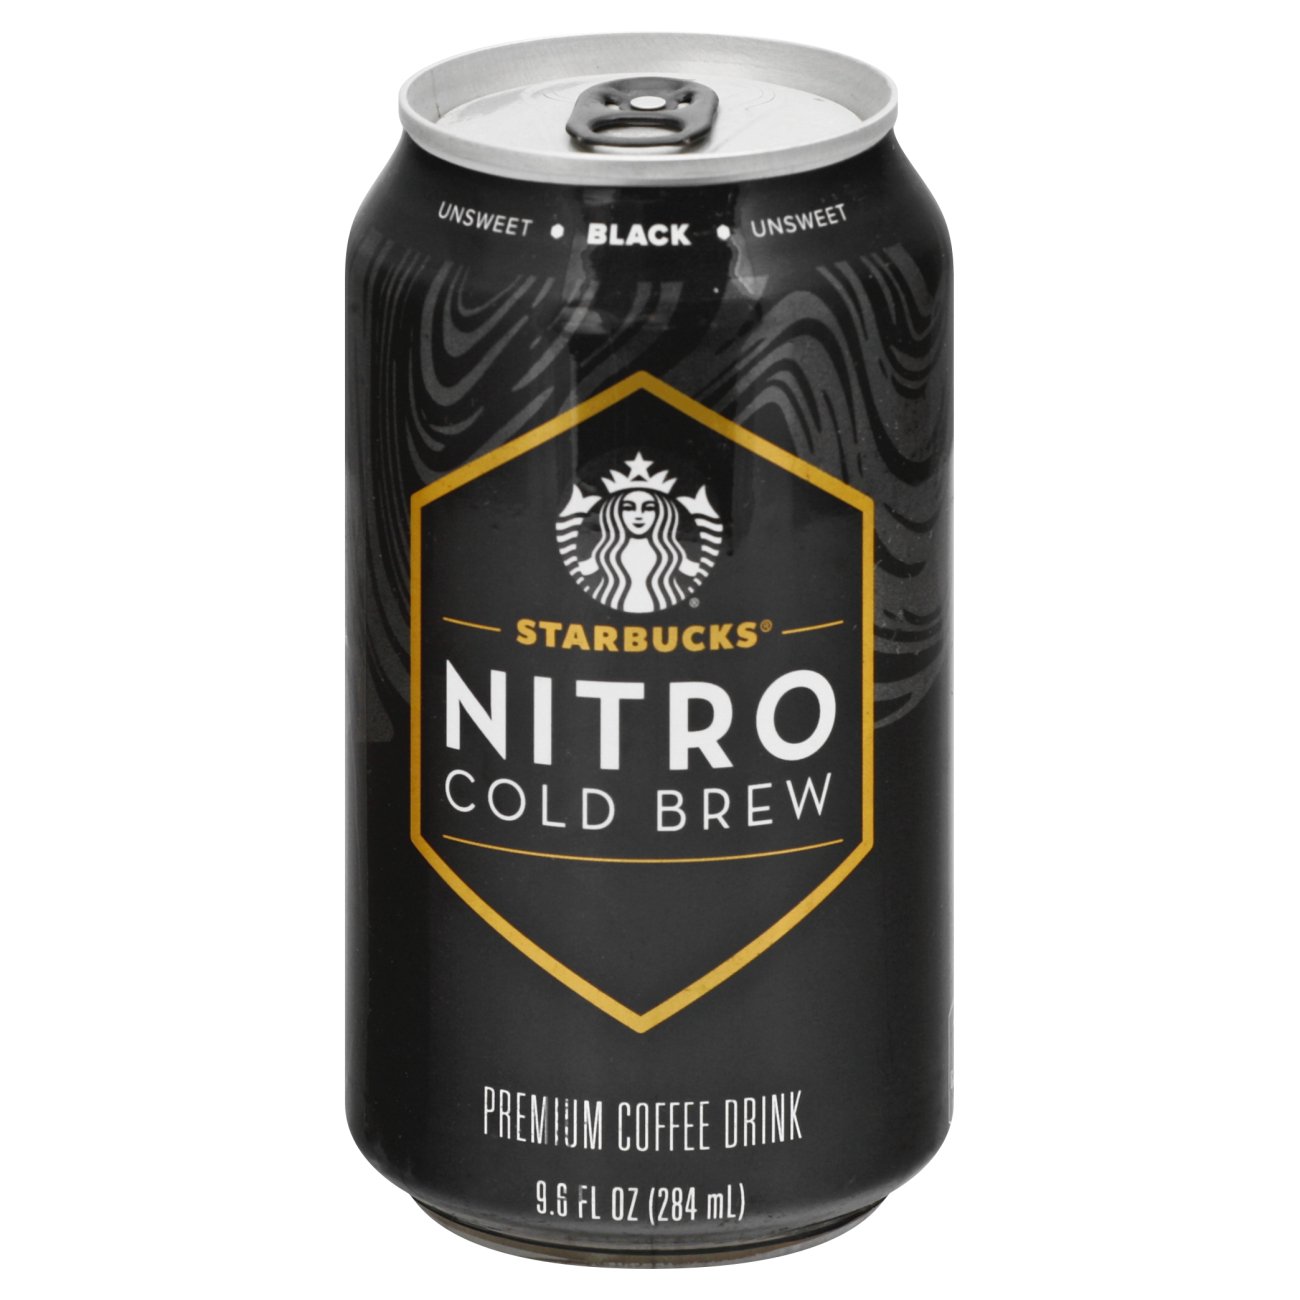 Nitro Cold Brew Coffee: Starbucks Coffee Company